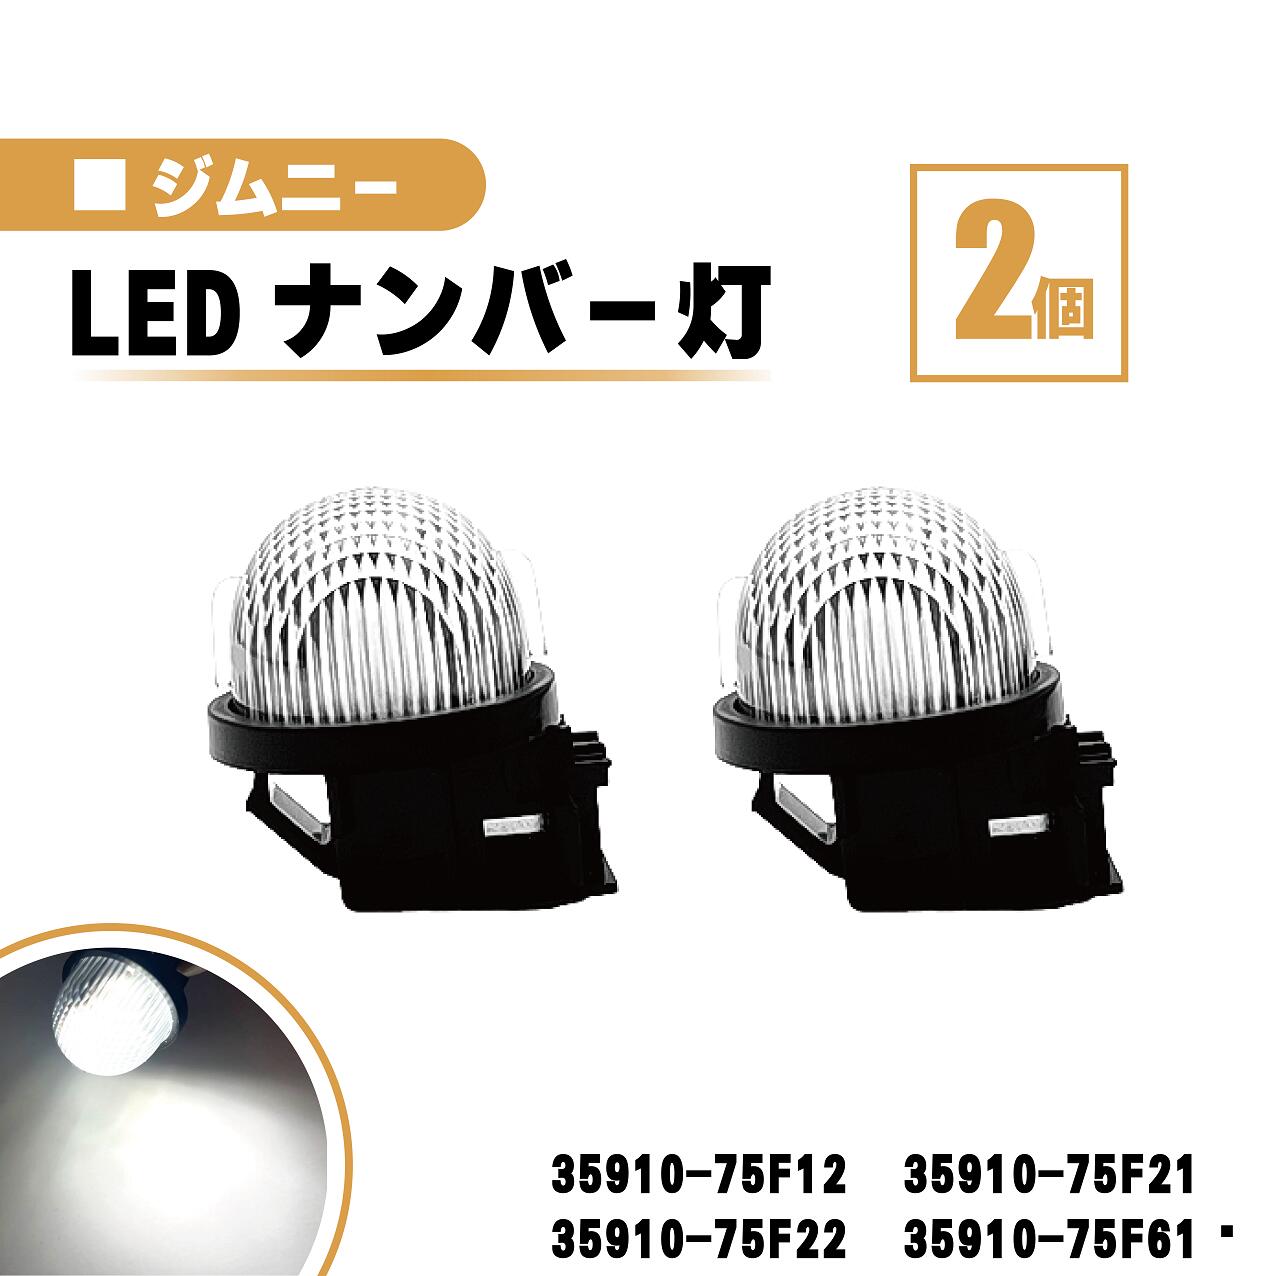 スズキ ジムニー LED ナンバー 灯 2個 セット レンズ 一体型 リア ライセンスプレート ランプ ライト 白 ホワイト 高輝度 JB23W JB64W 送込 35910-75F12 35910-75F21 35910-75F22 35910-75F61